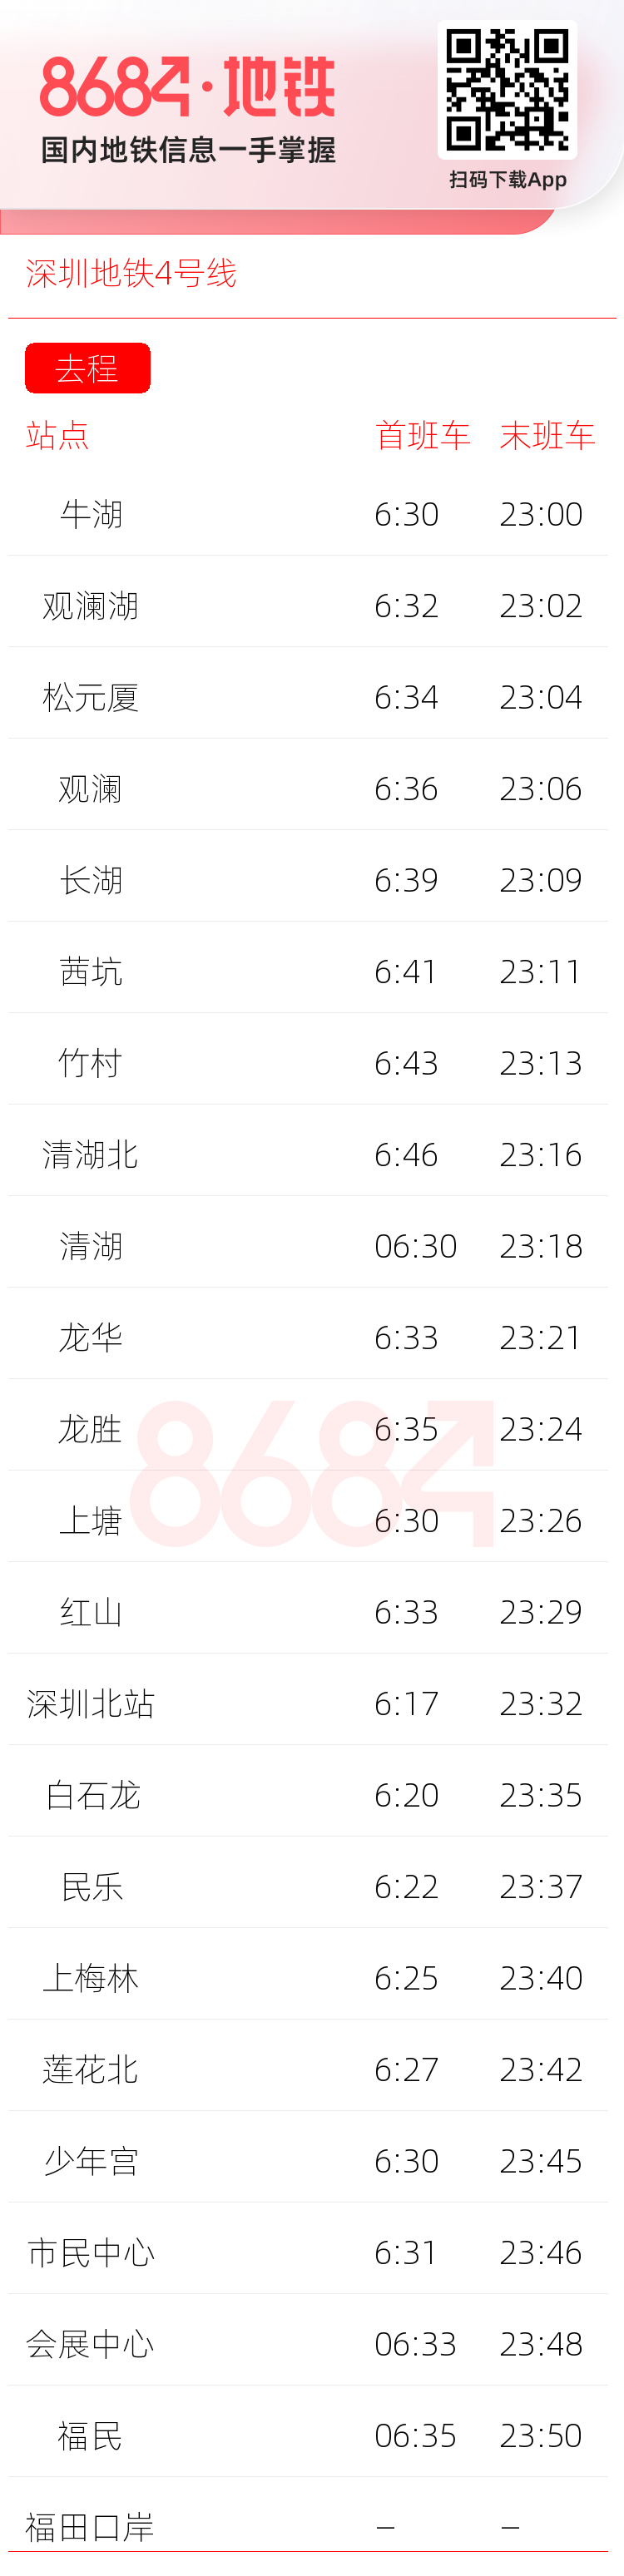 深圳地铁4号线运营时间表